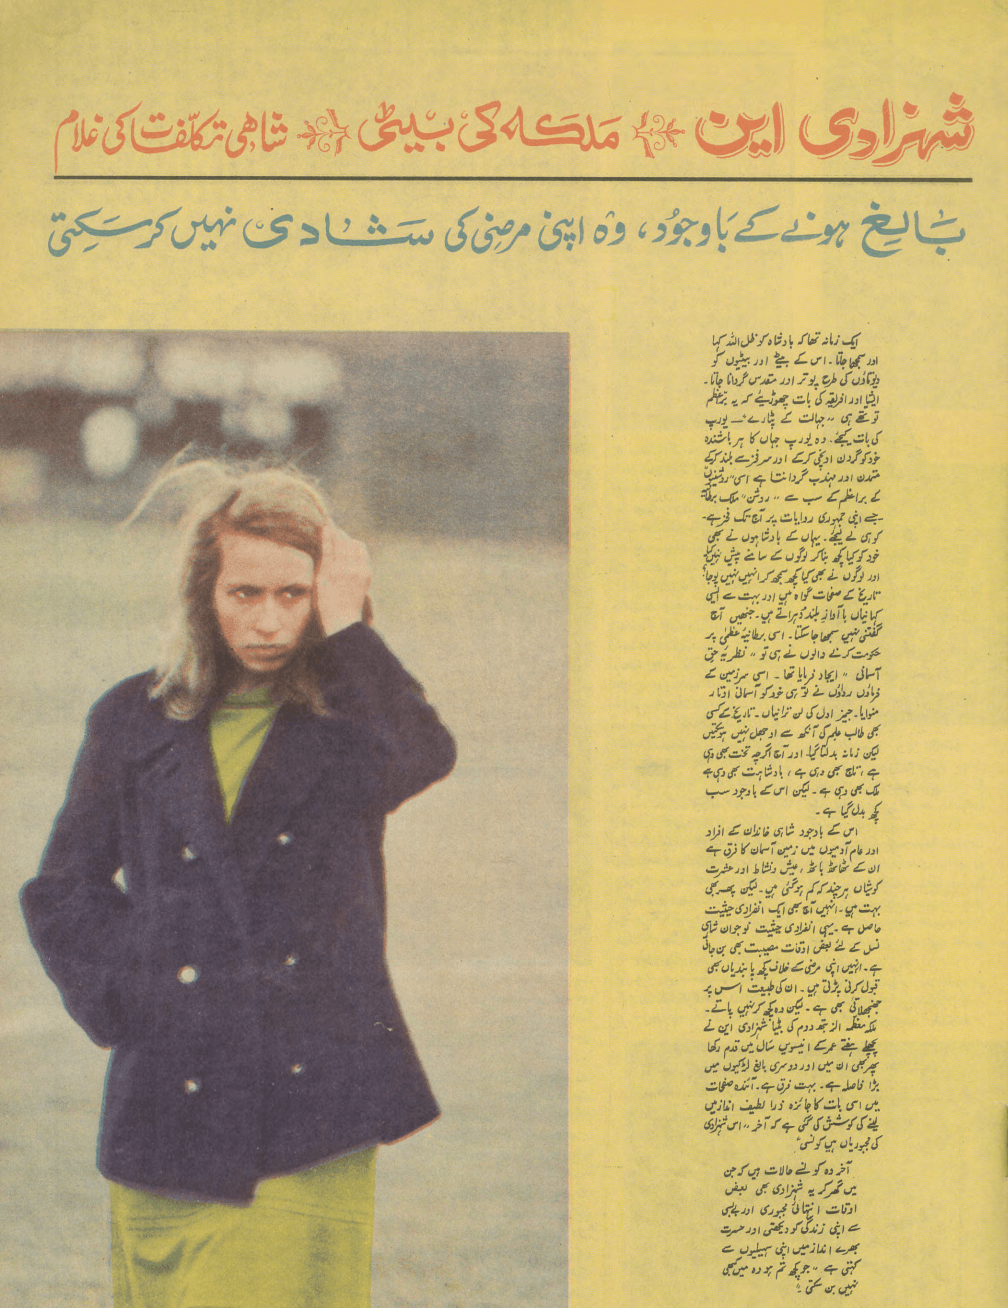 Akhbar-e-Jahan (Aug 28, 1968) - KHAJISTAN™